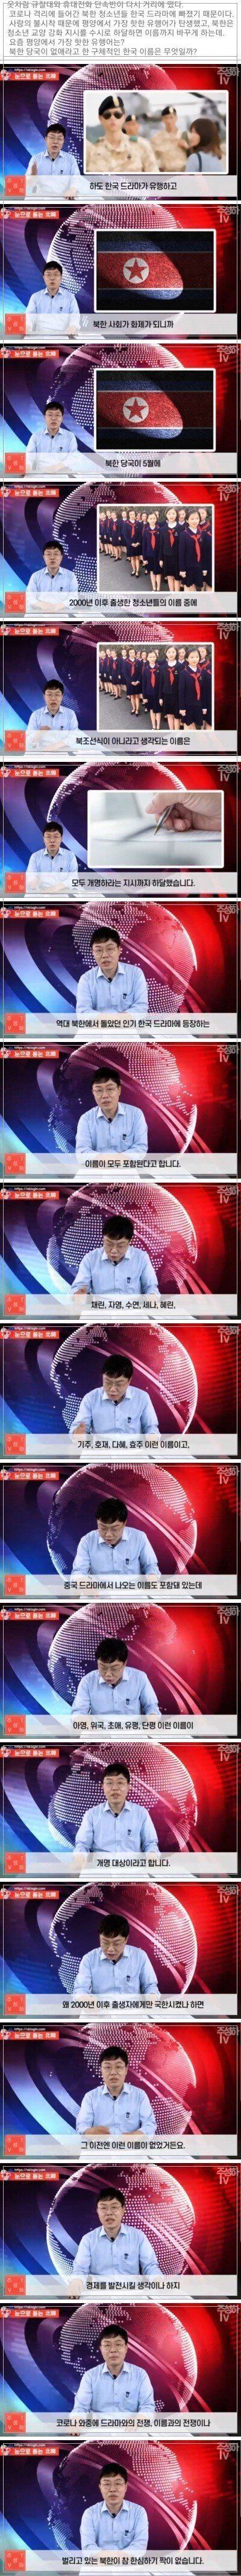 북한 개명 강요.jpg